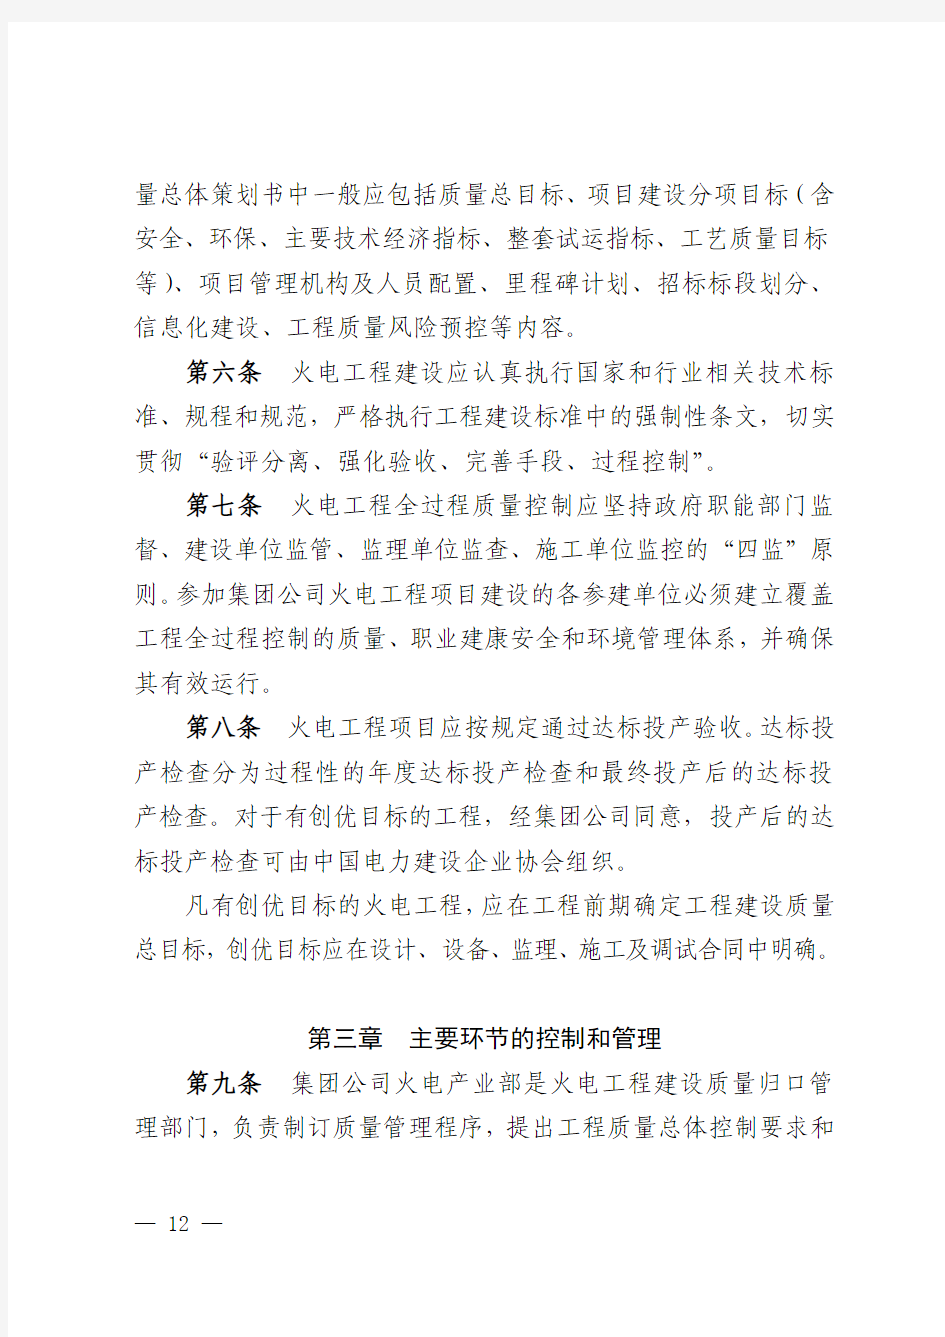 中国华电集团公司火电工程质量管理程序(A版)